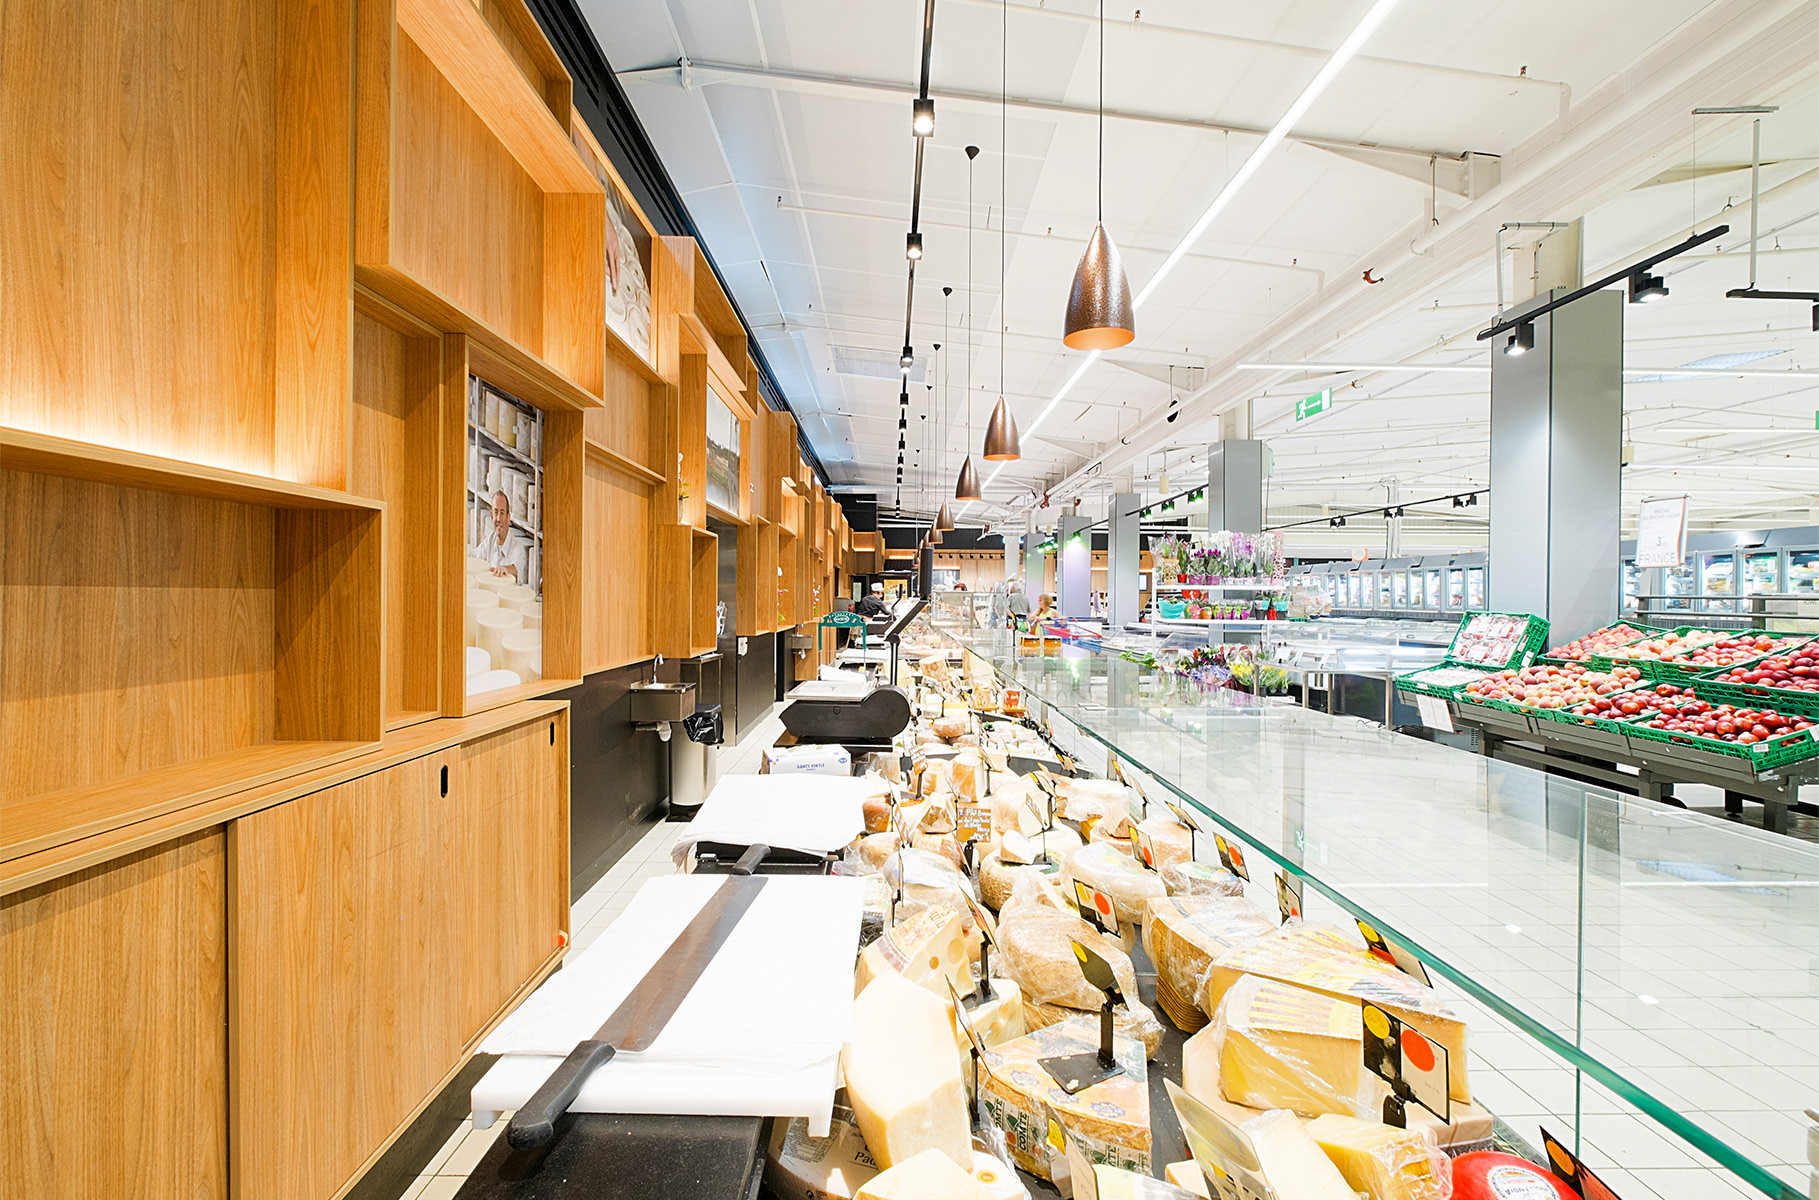 Photographie depuis la fromagerie de l'intérieur de Villemur-sur-Tarn